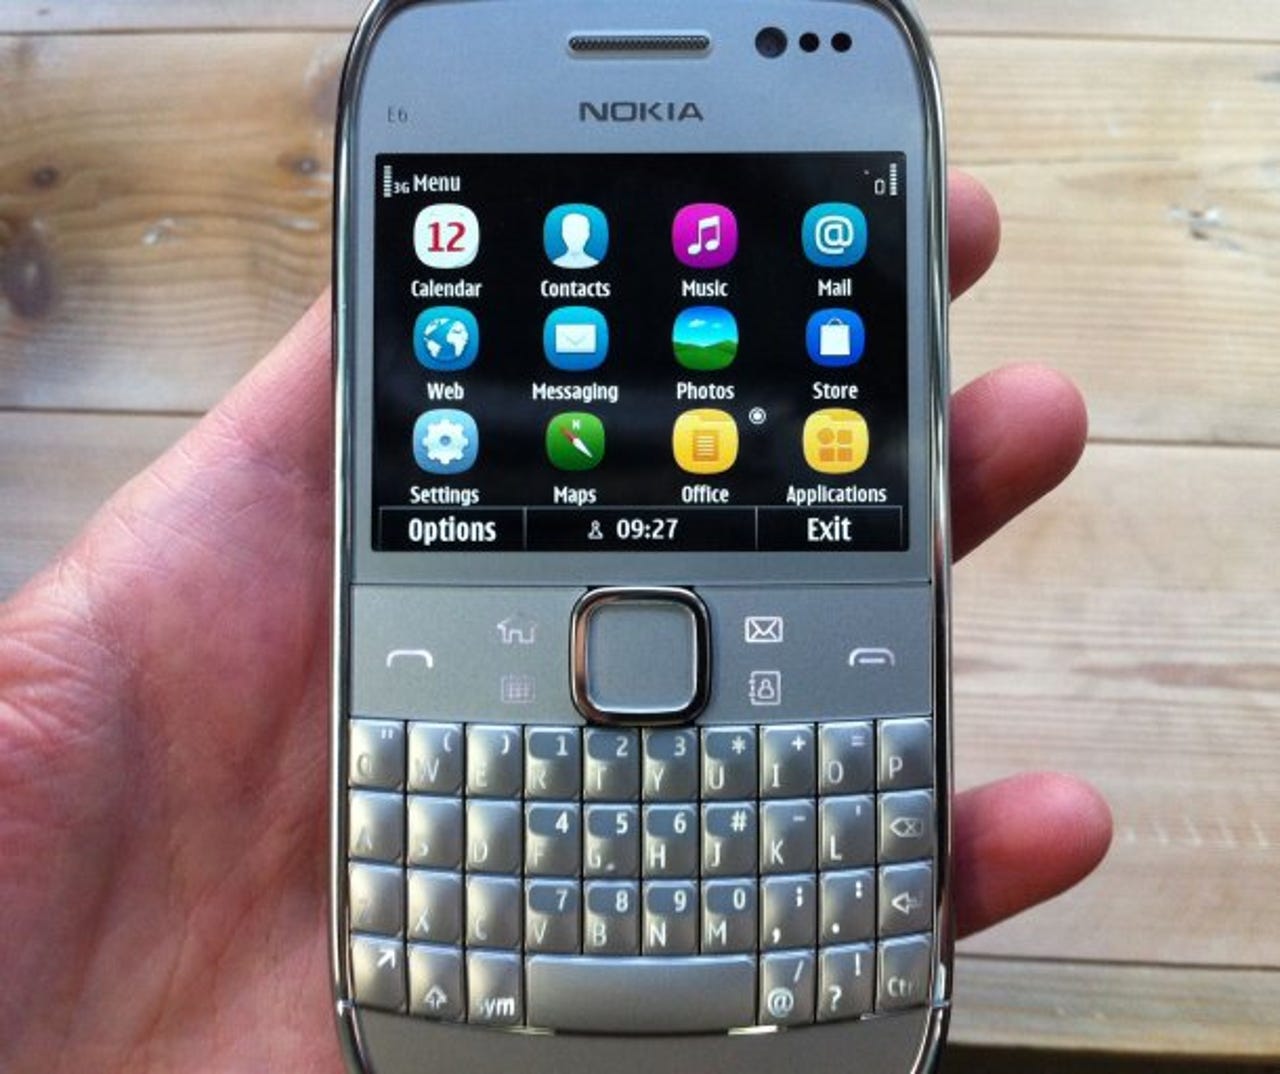 Nokia E6 Symbian smartphone - running Anna update